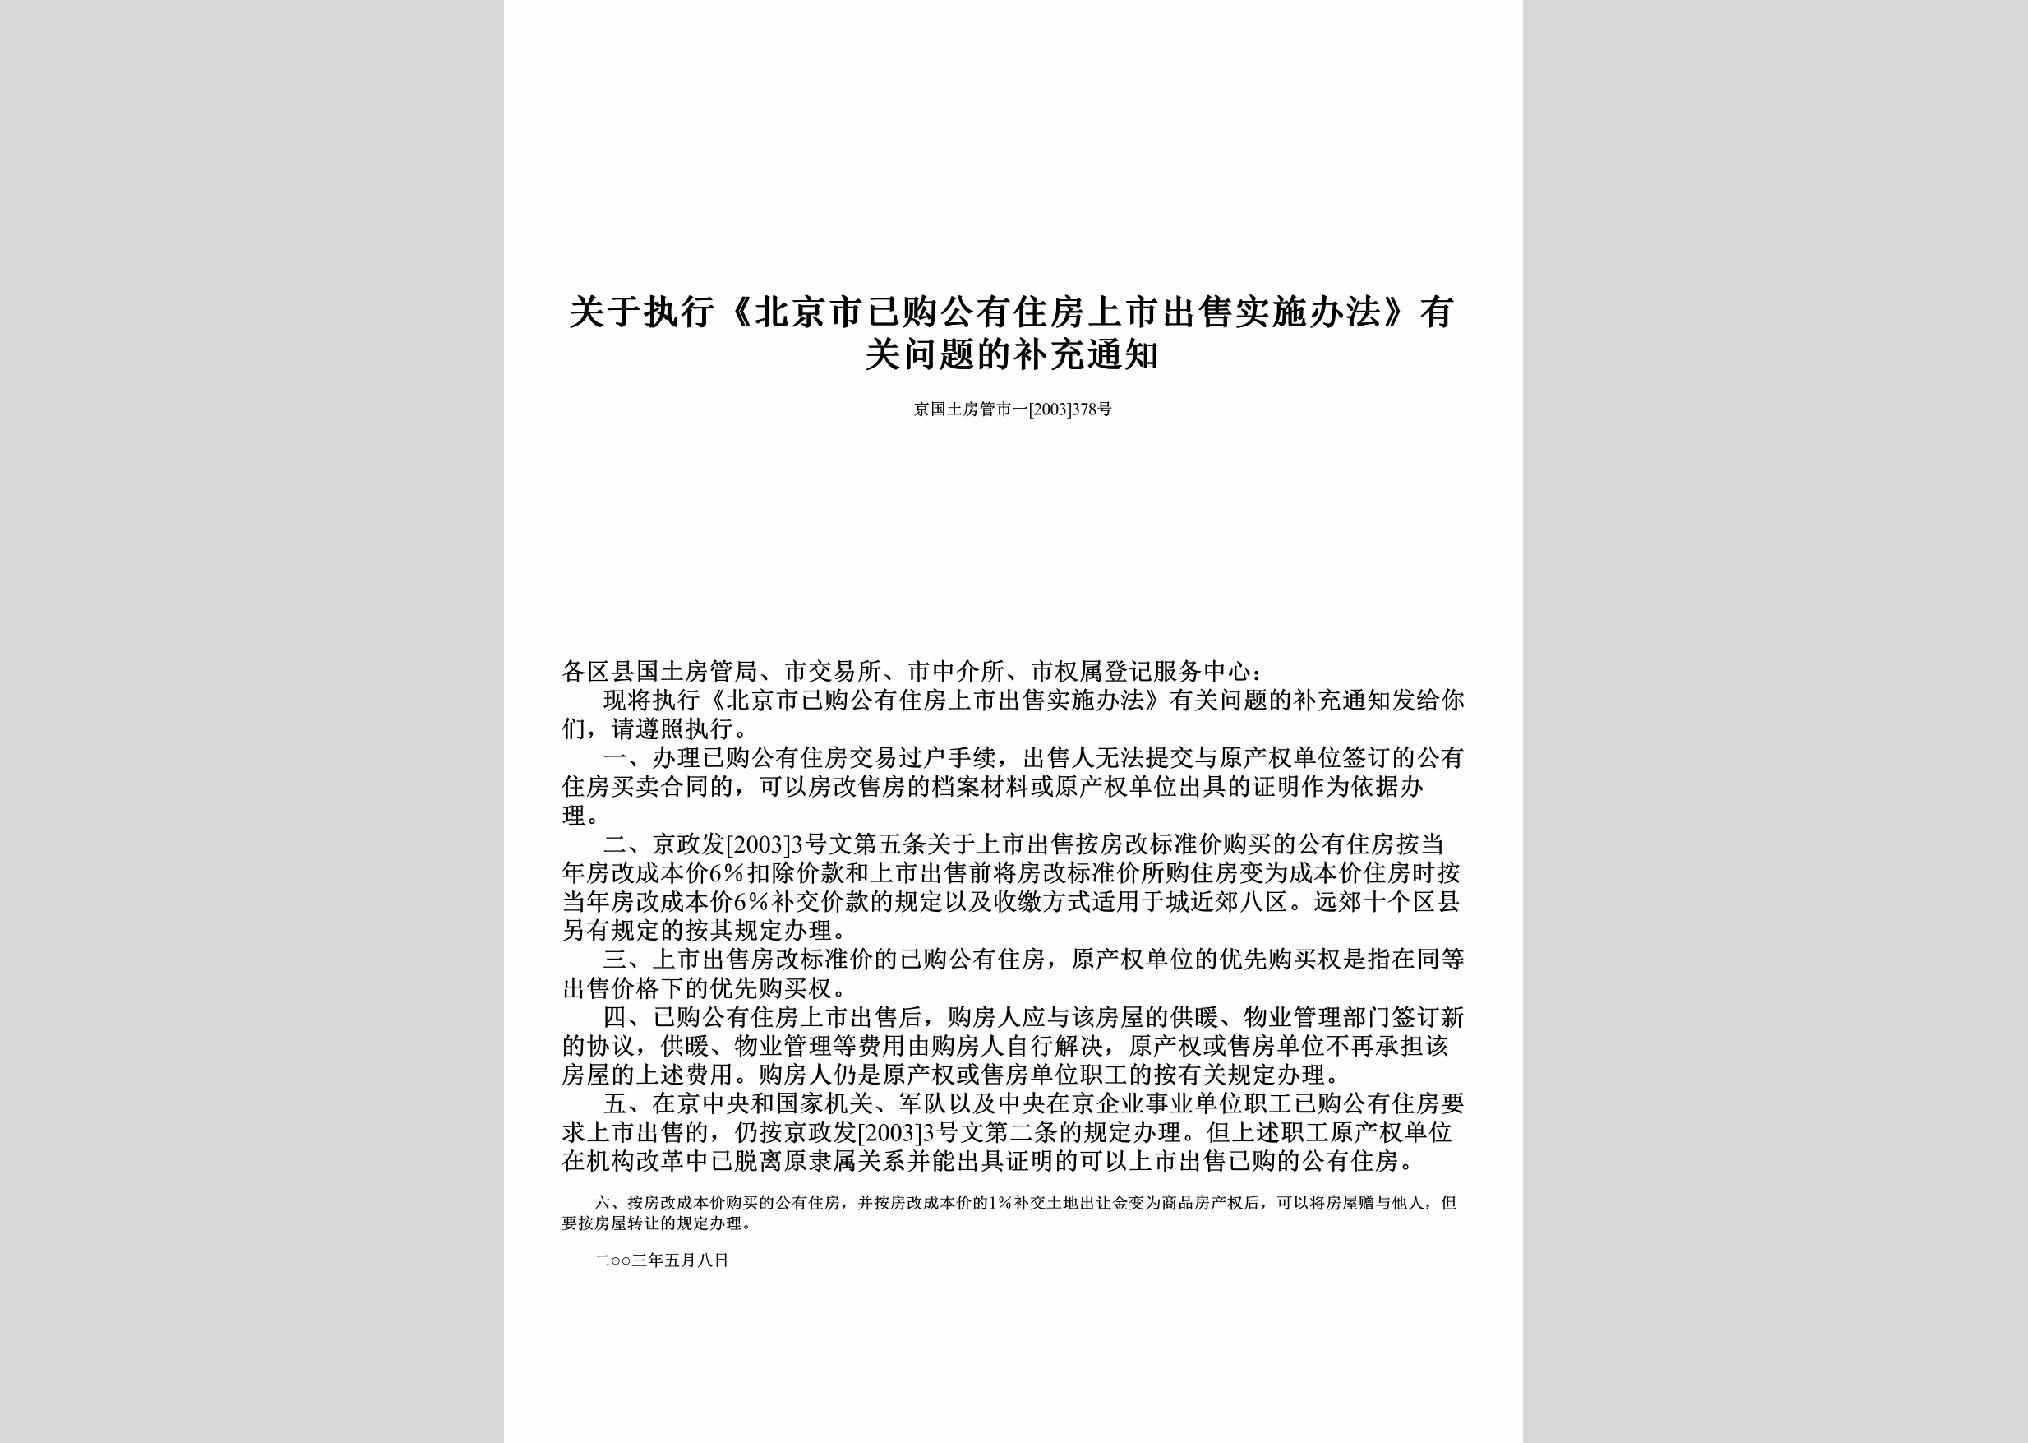 京国土房管市一[2003]378号：关于执行《北京市已购公有住房上市出售实施办法》有关问题的补充通知